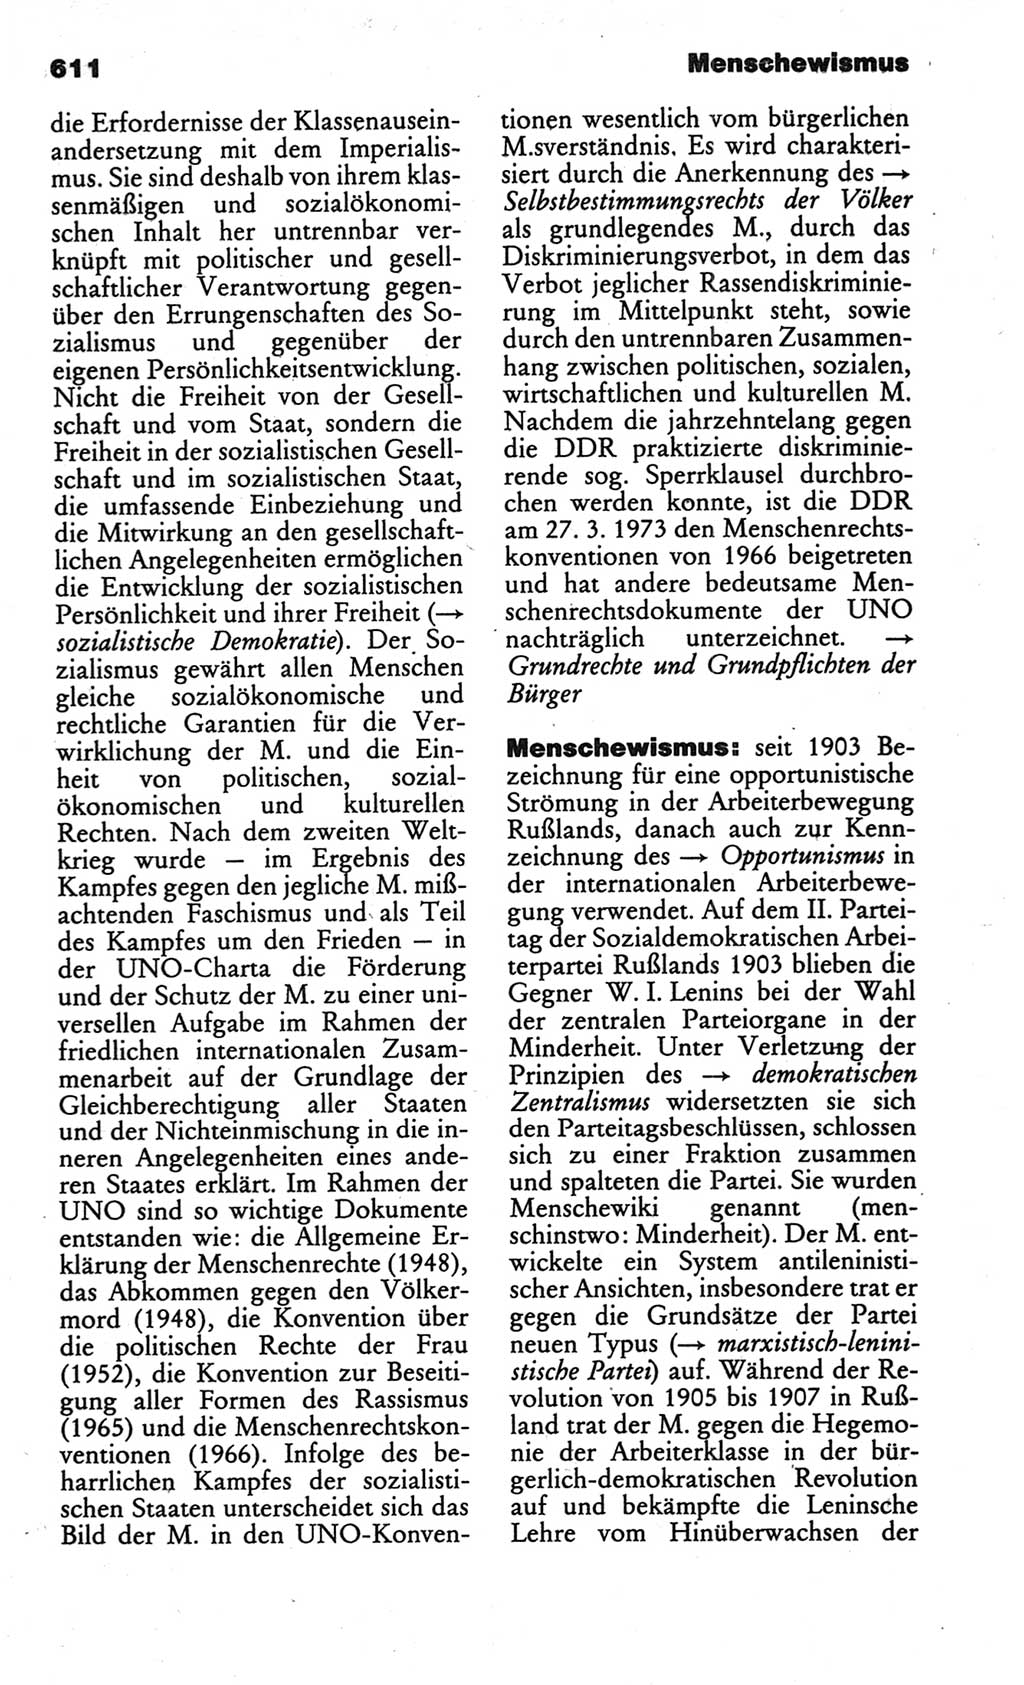 Kleines politisches Wörterbuch [Deutsche Demokratische Republik (DDR)] 1986, Seite 611 (Kl. pol. Wb. DDR 1986, S. 611)